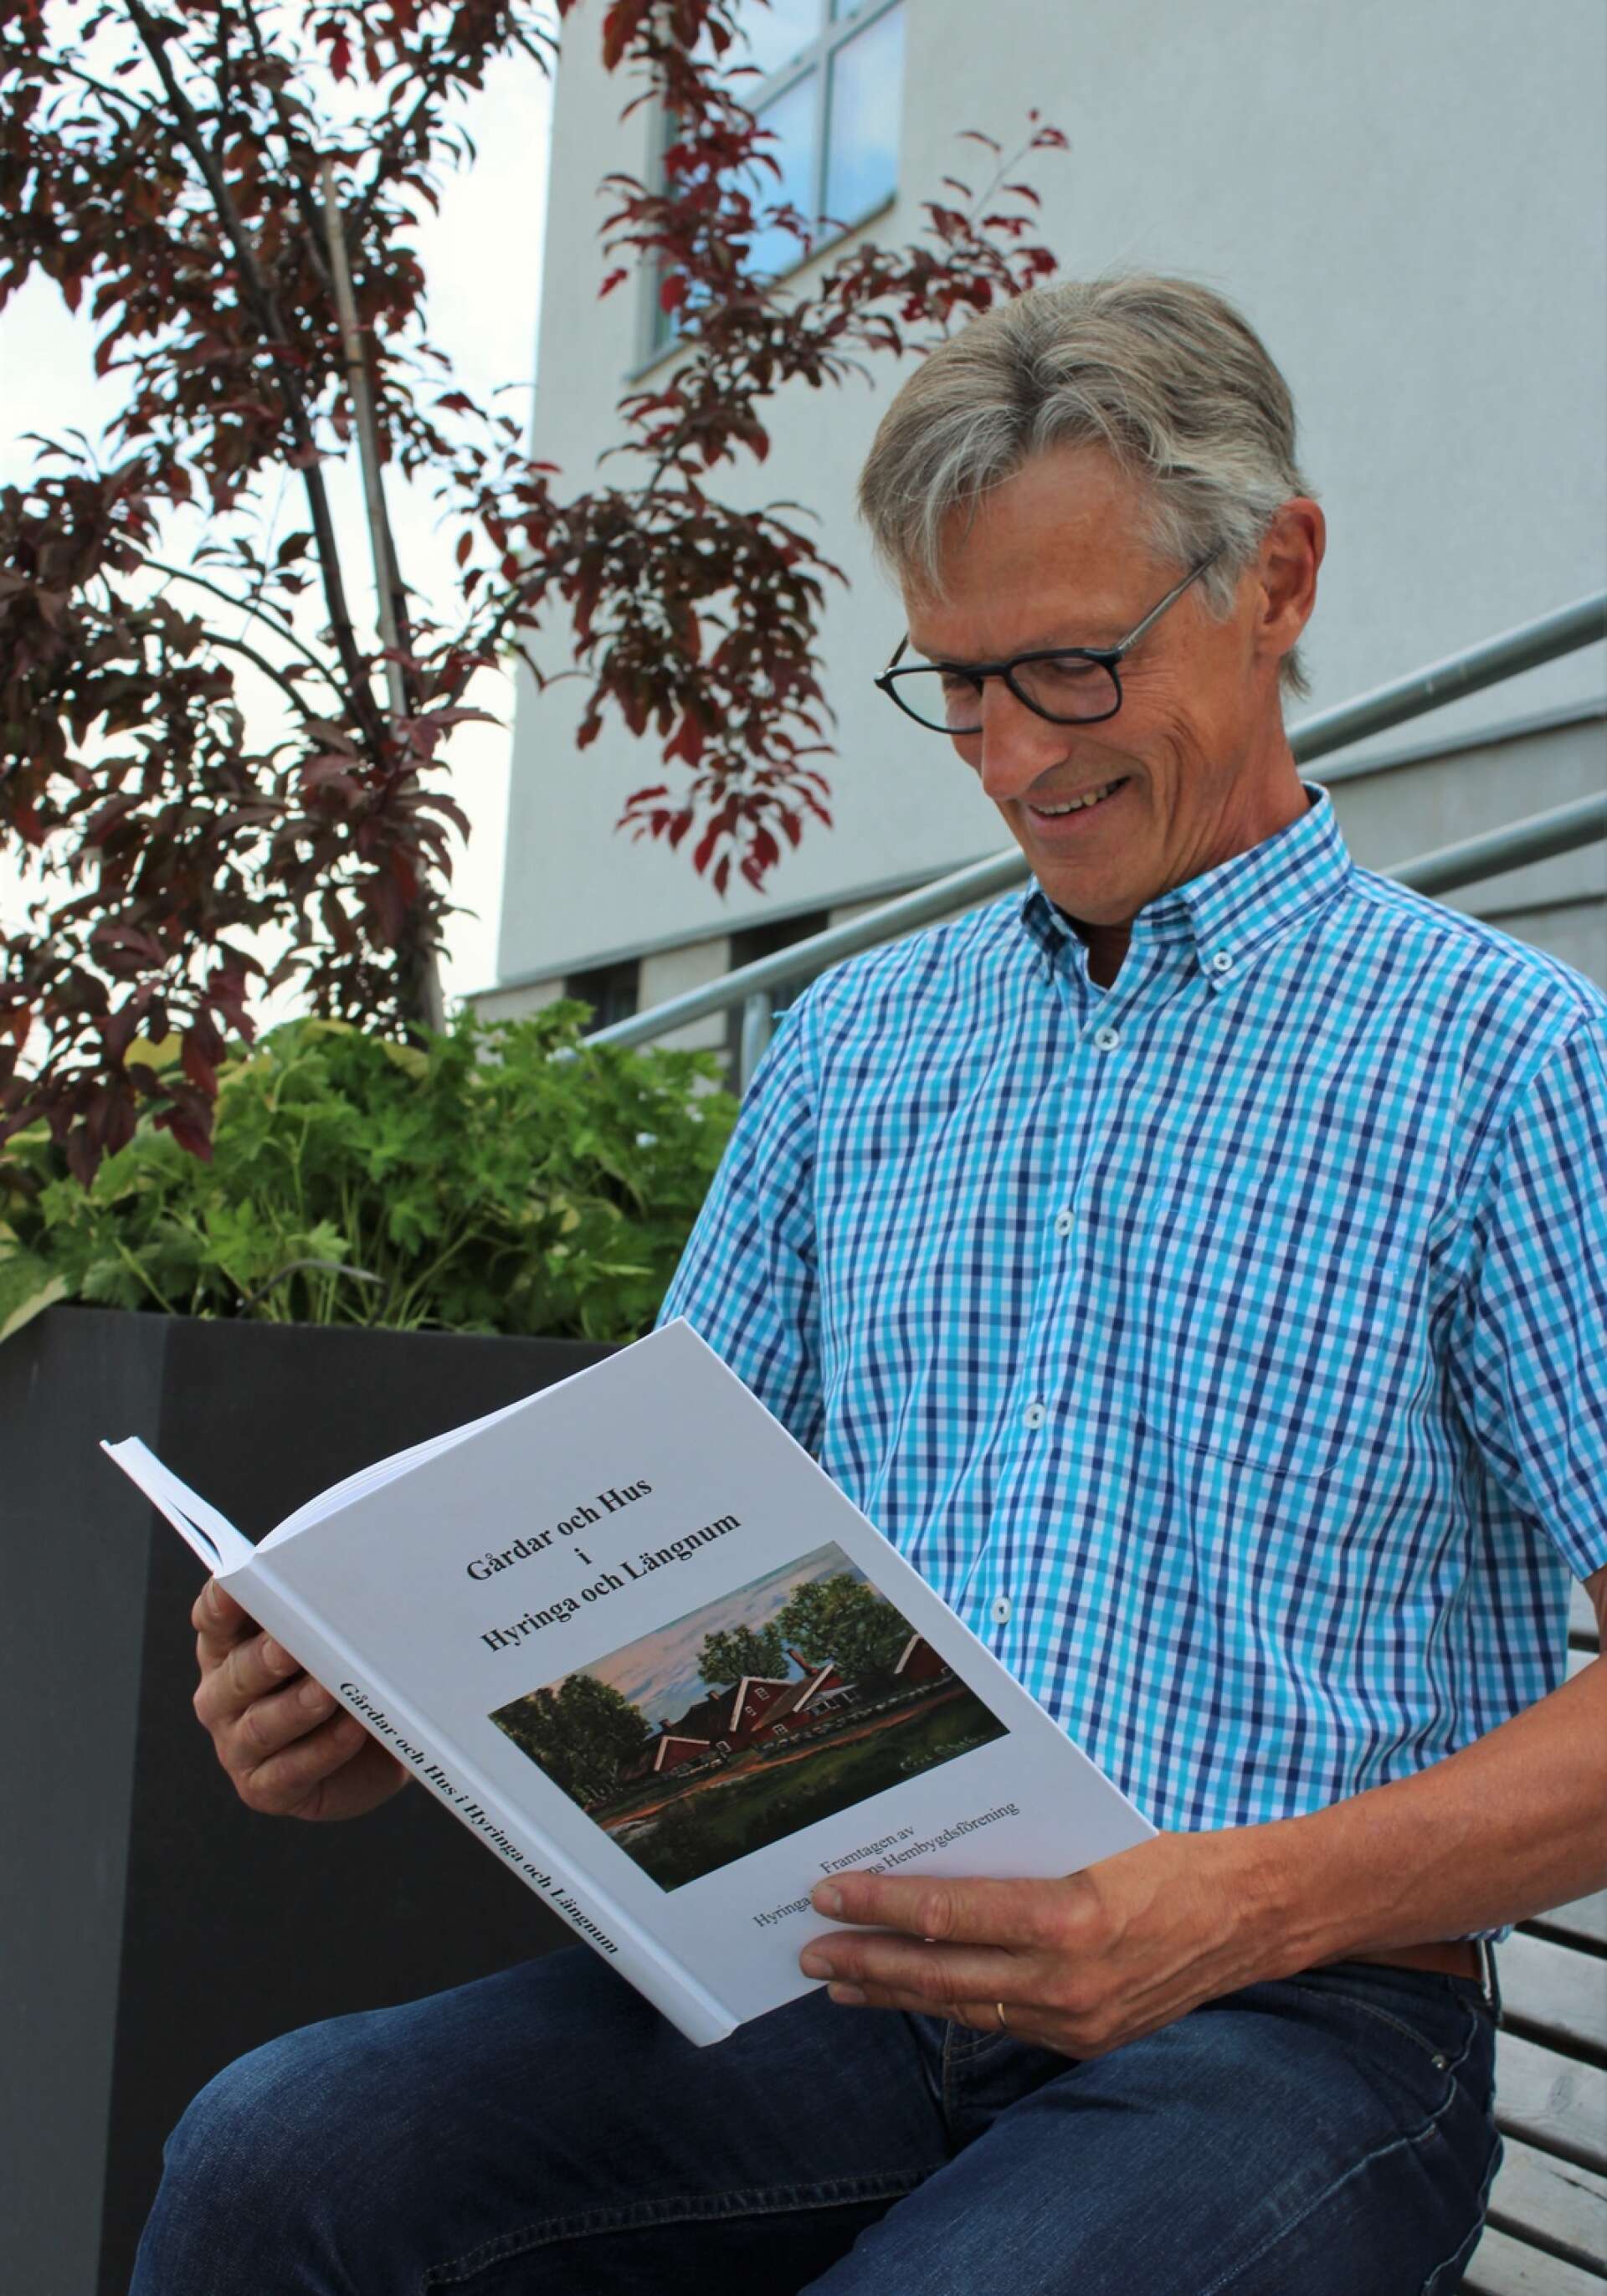 Allt arbete med boken resulterade sedan i 335 sidor med bilder och information om gårdar och hus i Hyringa och Längnum.